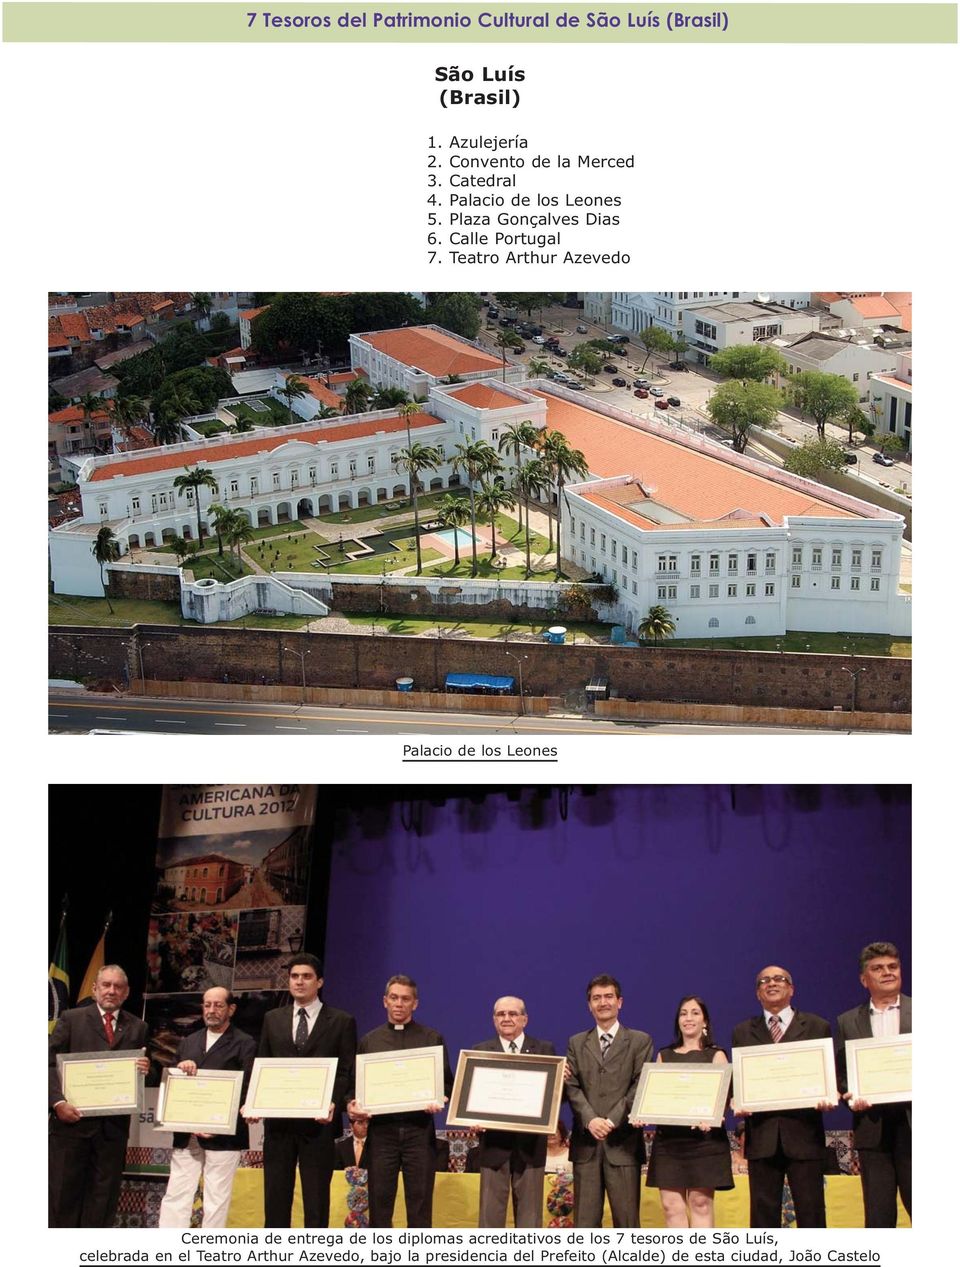 Teatro Arthur Azevedo Palacio de los Leones Ceremonia de entrega de los diplomas acreditativos de los 7